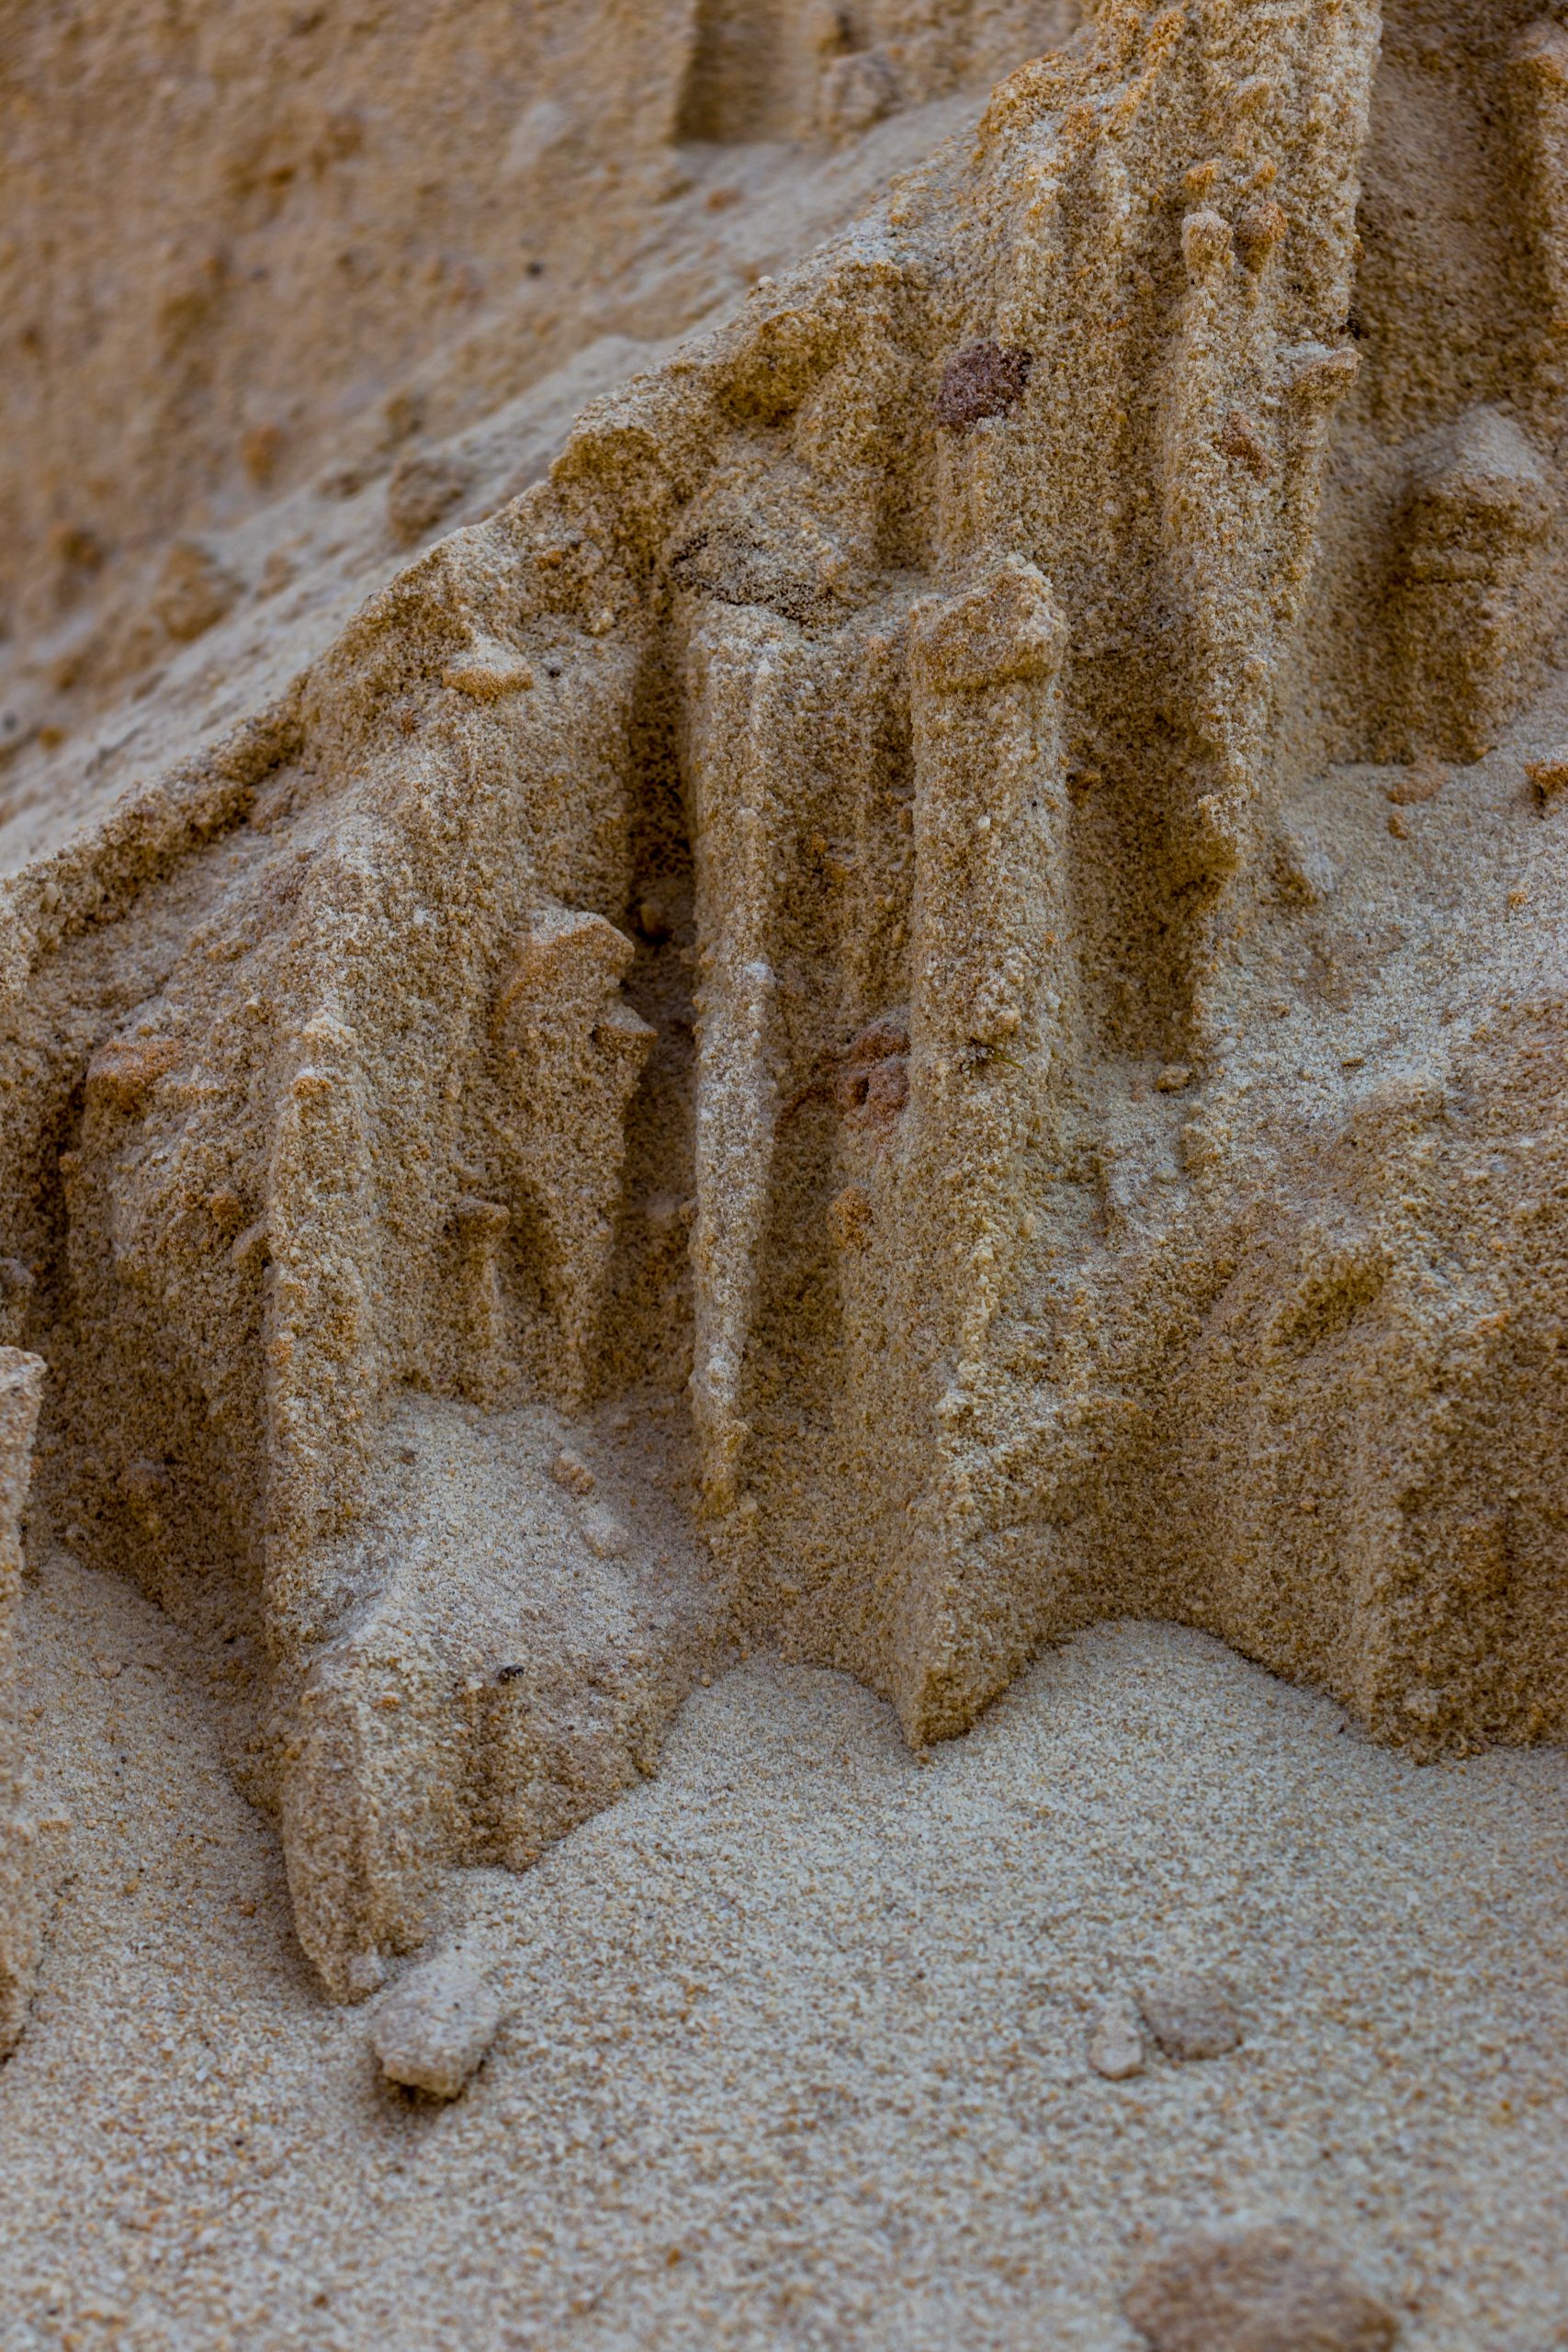 A sand castle